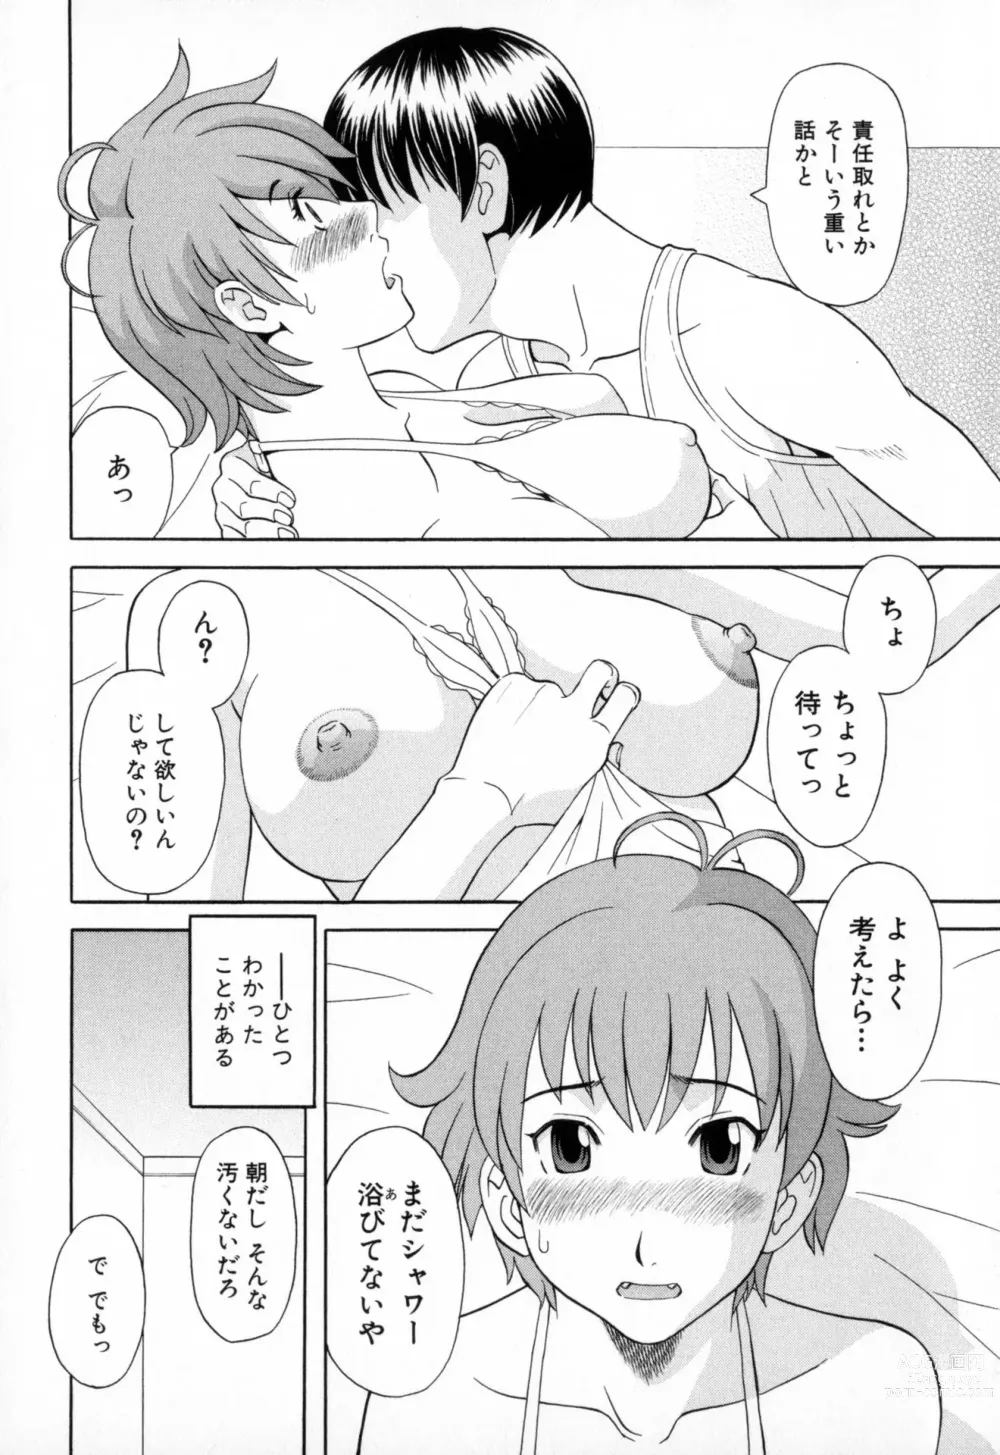 Page 30 of manga Gokuraku Ladies - Paradise Ladies Koukotsu Hen